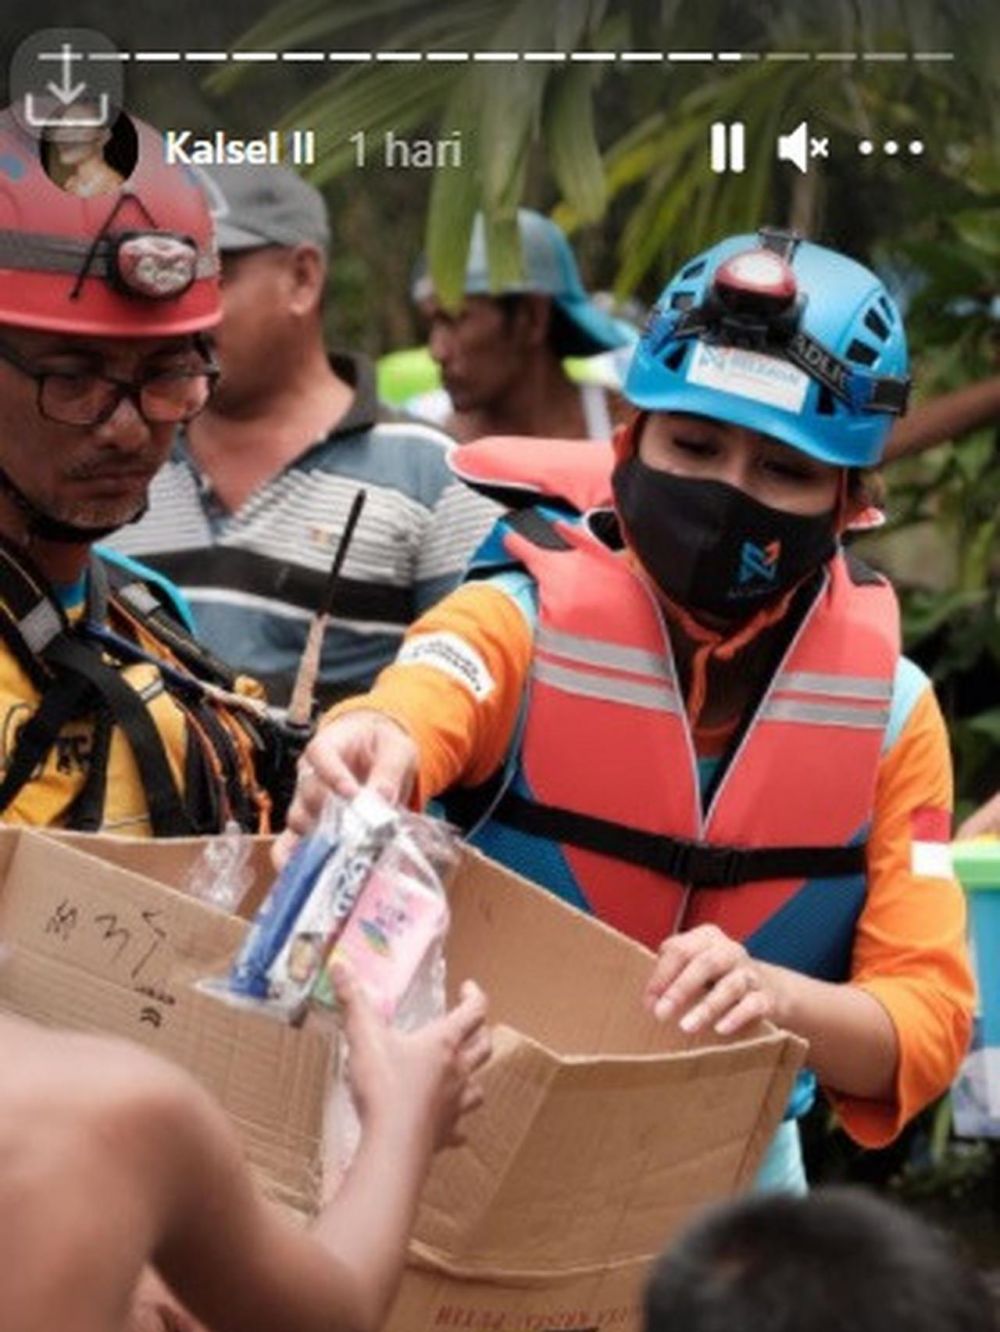 10 Potret Awkarin jadi relawan banjir Kalimantan Selatan, salut